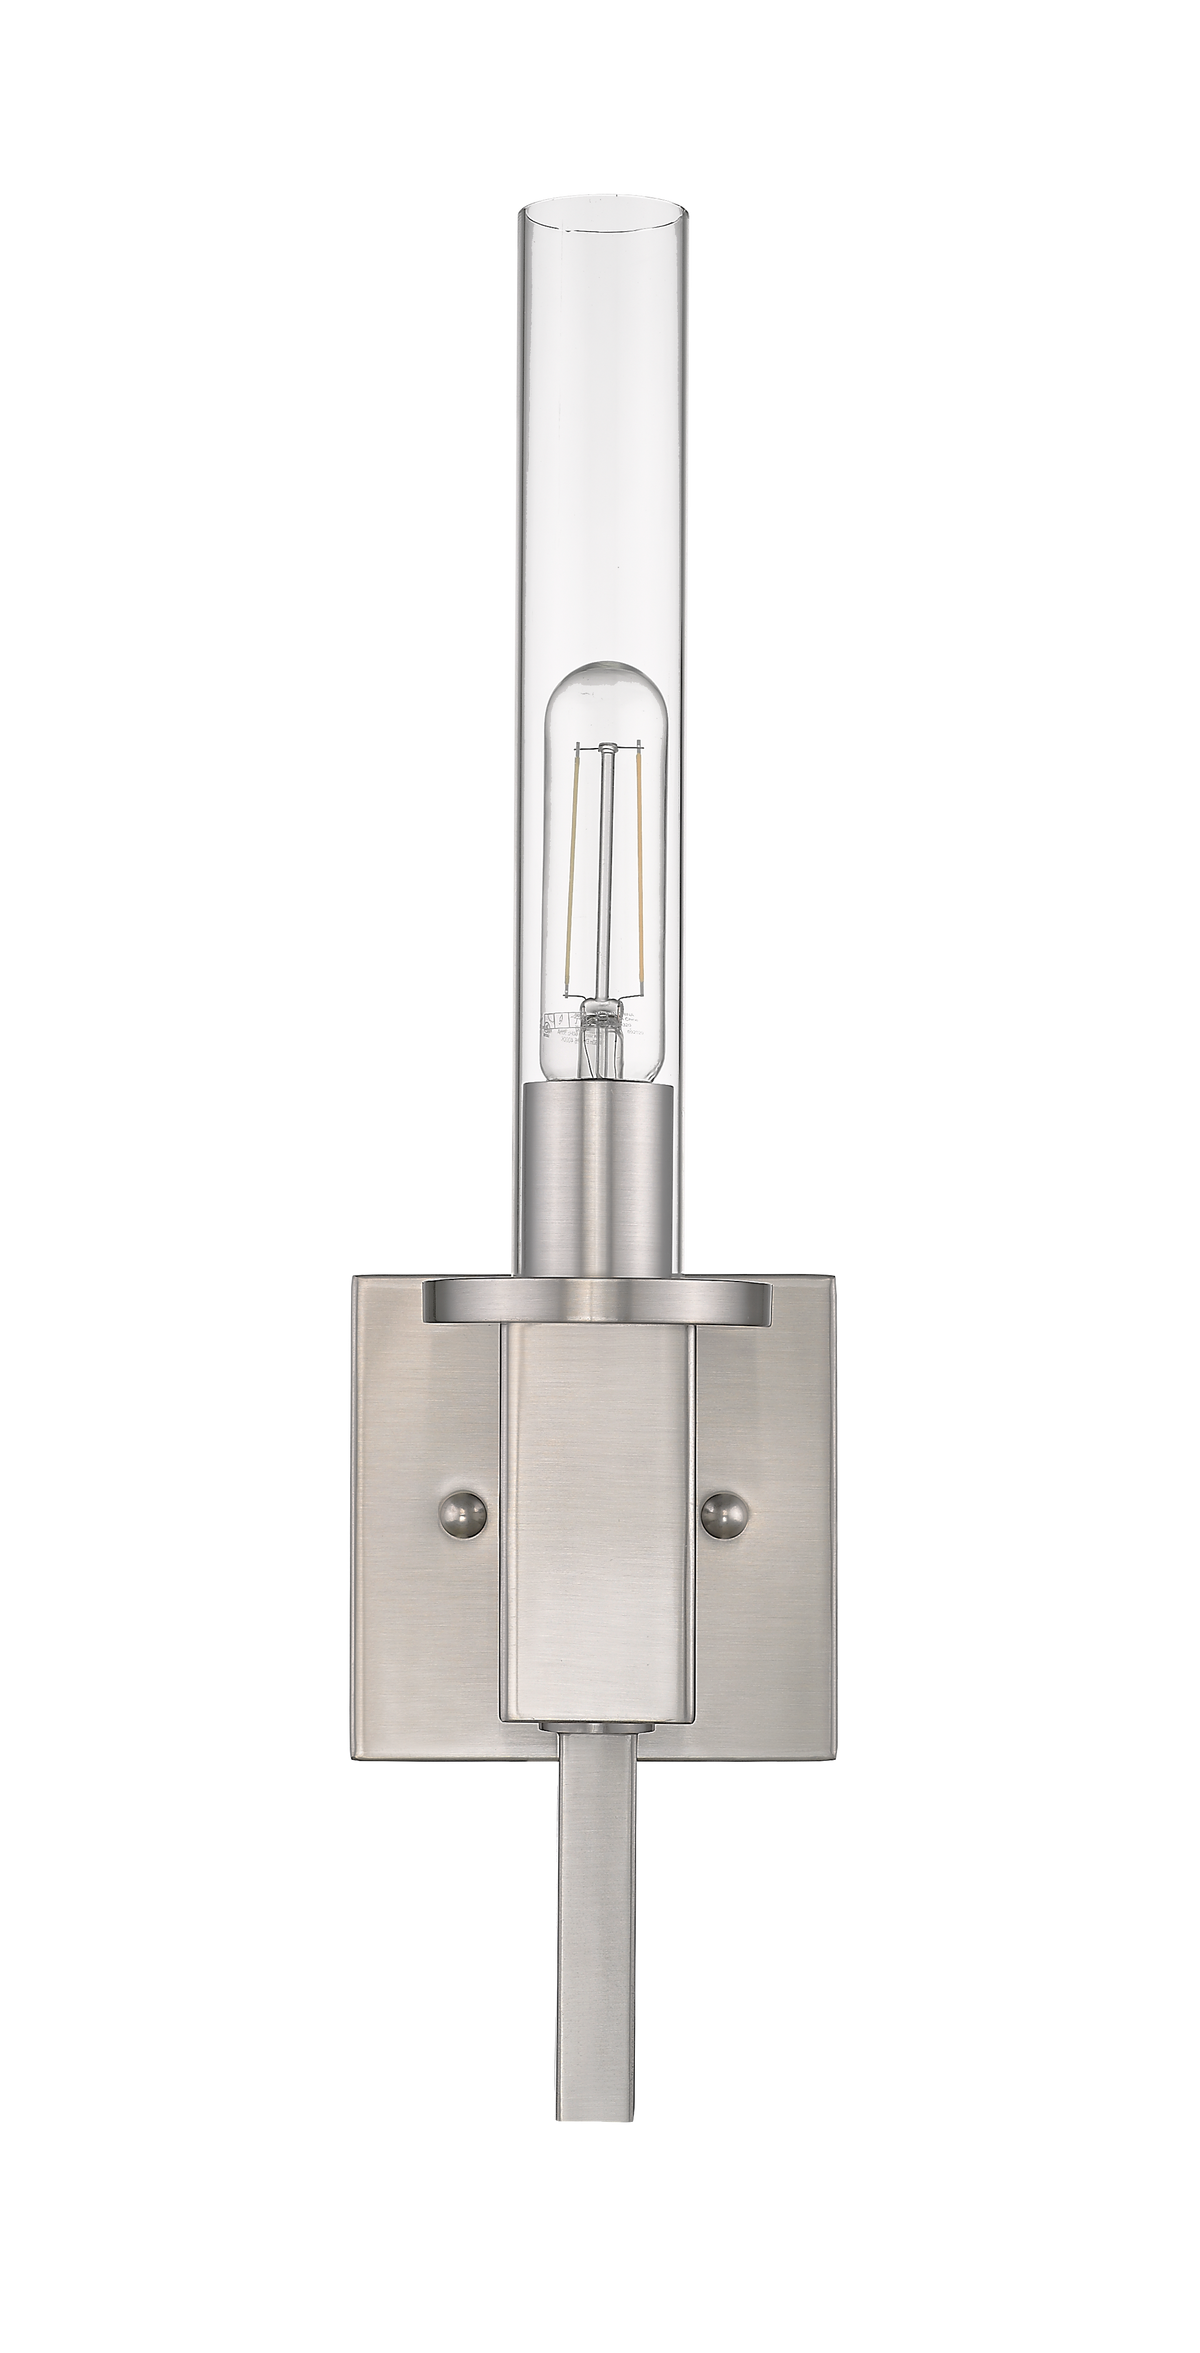 Nickel glass tube wall light for bathroom - Vivio Lighting